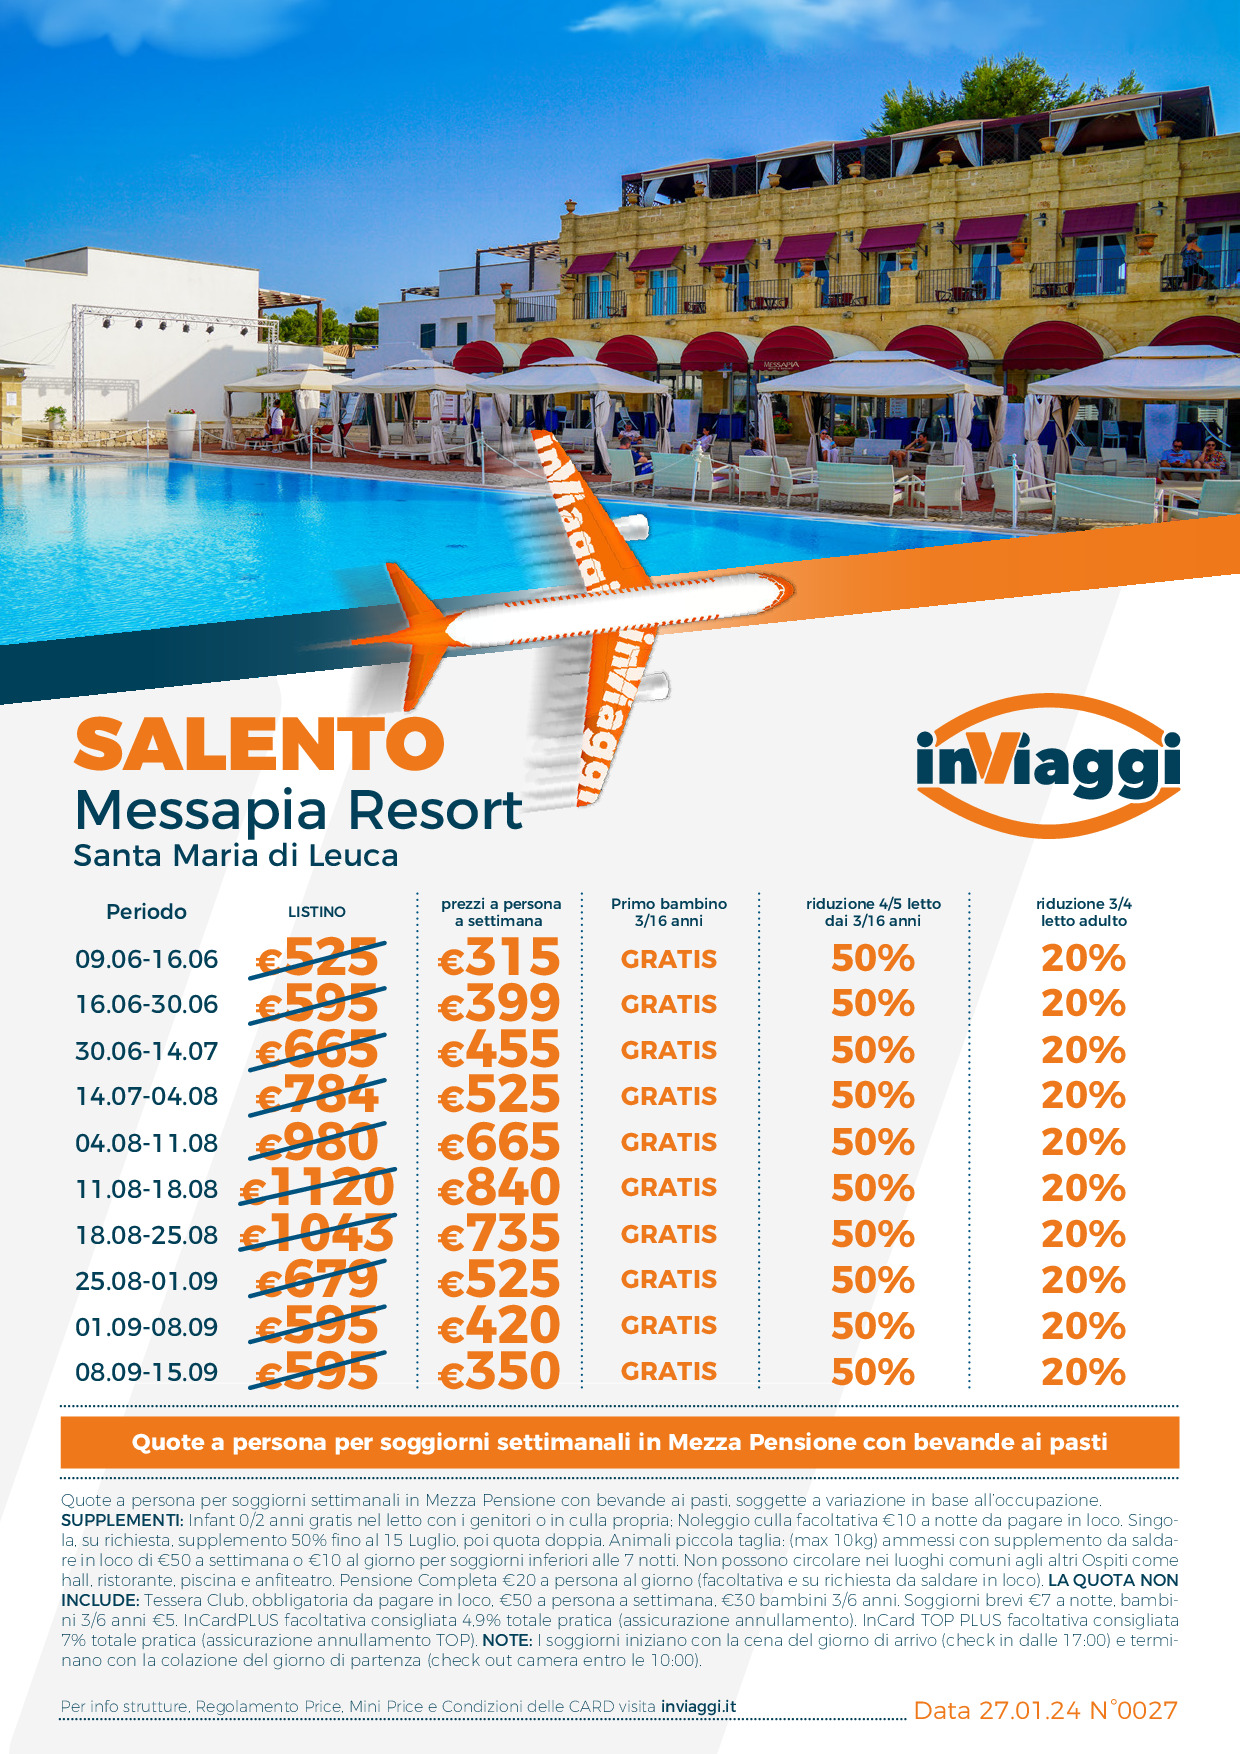 Messapia Resort - Marina di Leuca